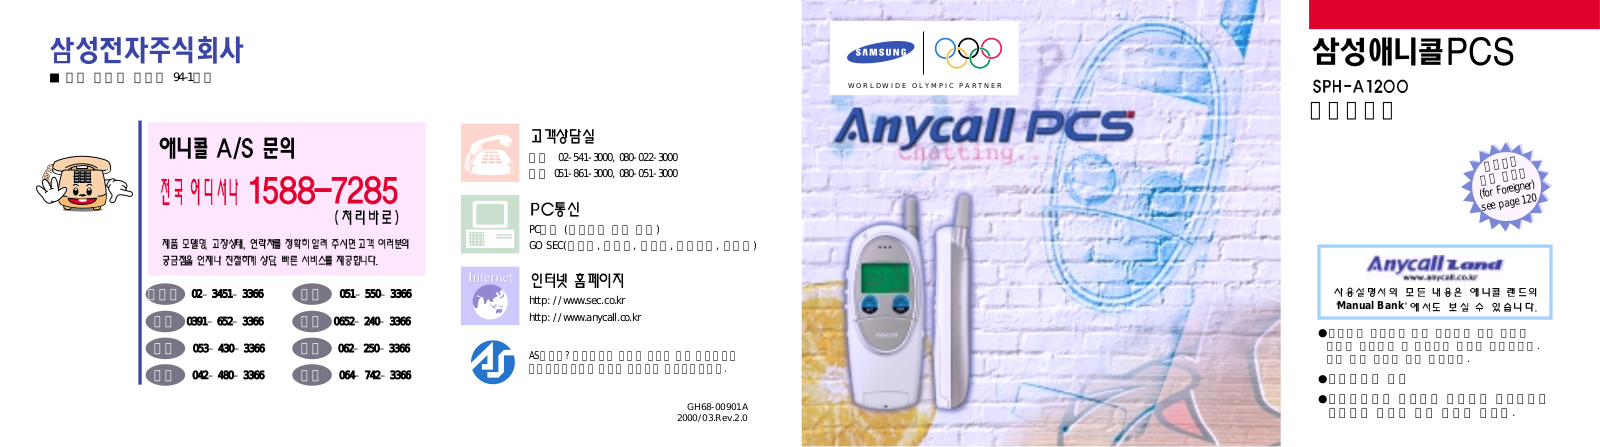 Samsung SPH-A1200W, SPH-A1200SV, SPH-A1200G, SPH-A1200B, SPH-A1200DG User Manual